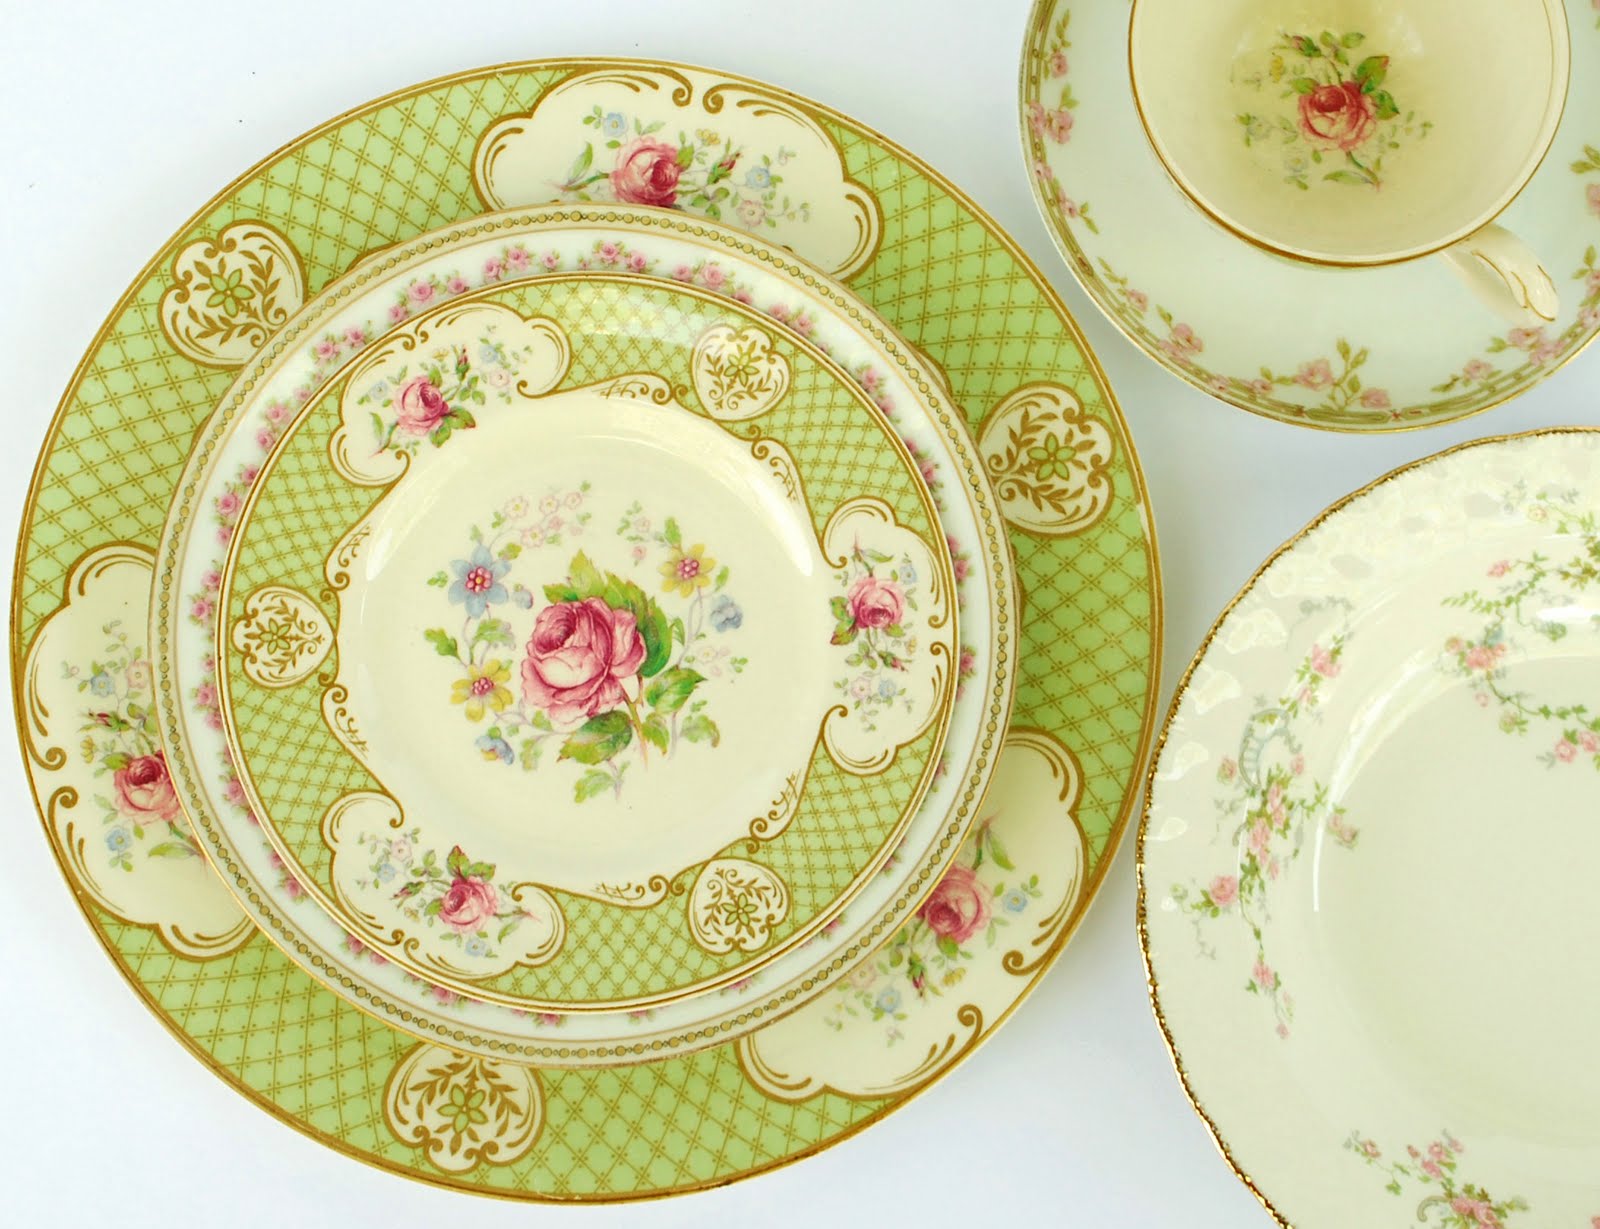 Collection plate. Винтажная посуда. Тарелки Версаль. Китайский фарфор Версаль. Посуда под винтажный фарфор.